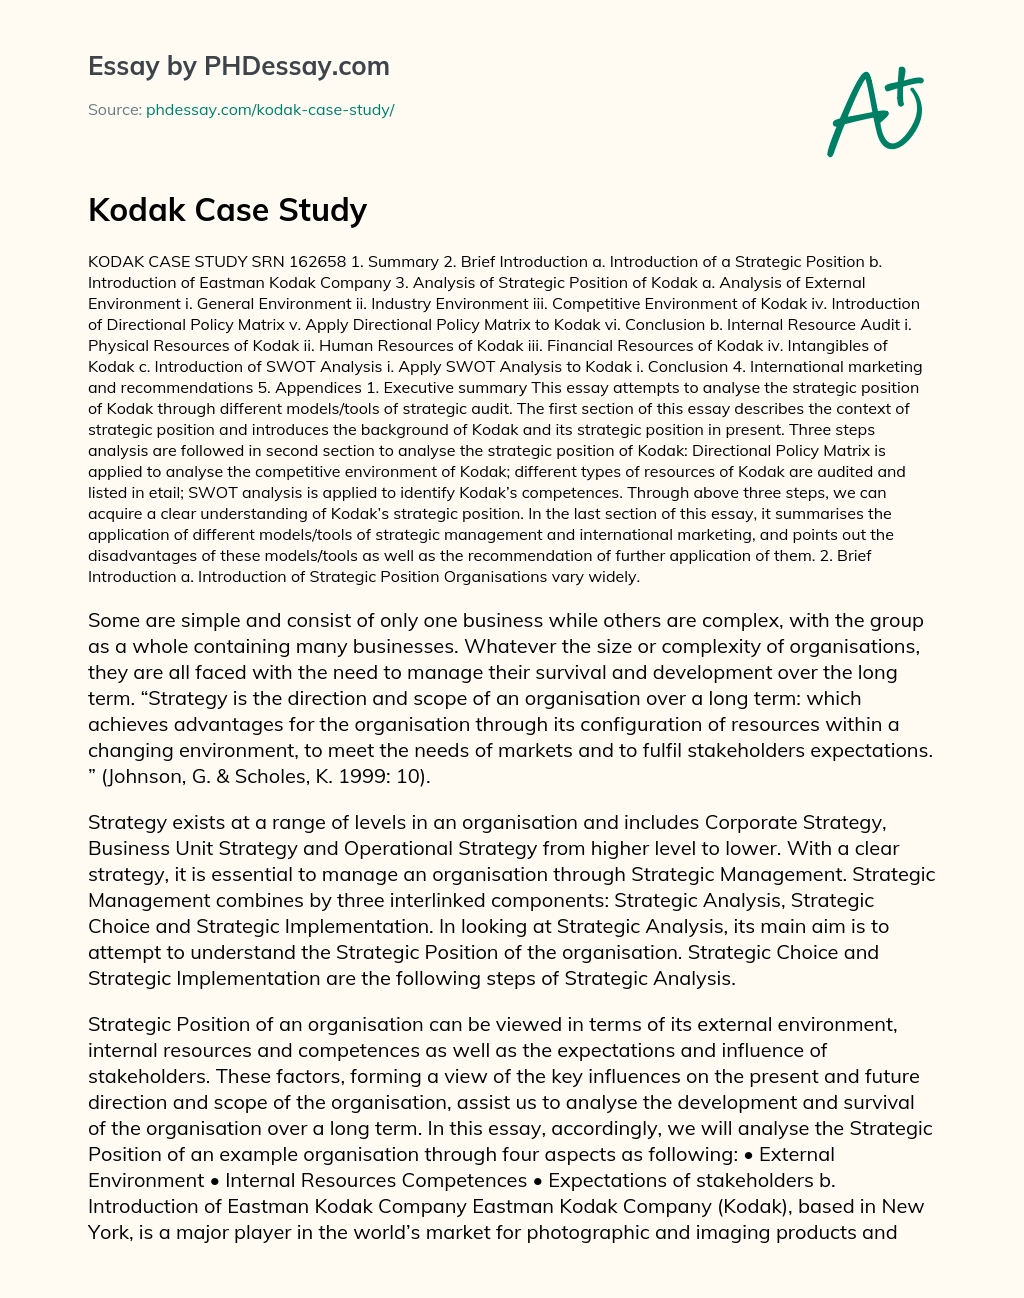 Kodak Case Study essay